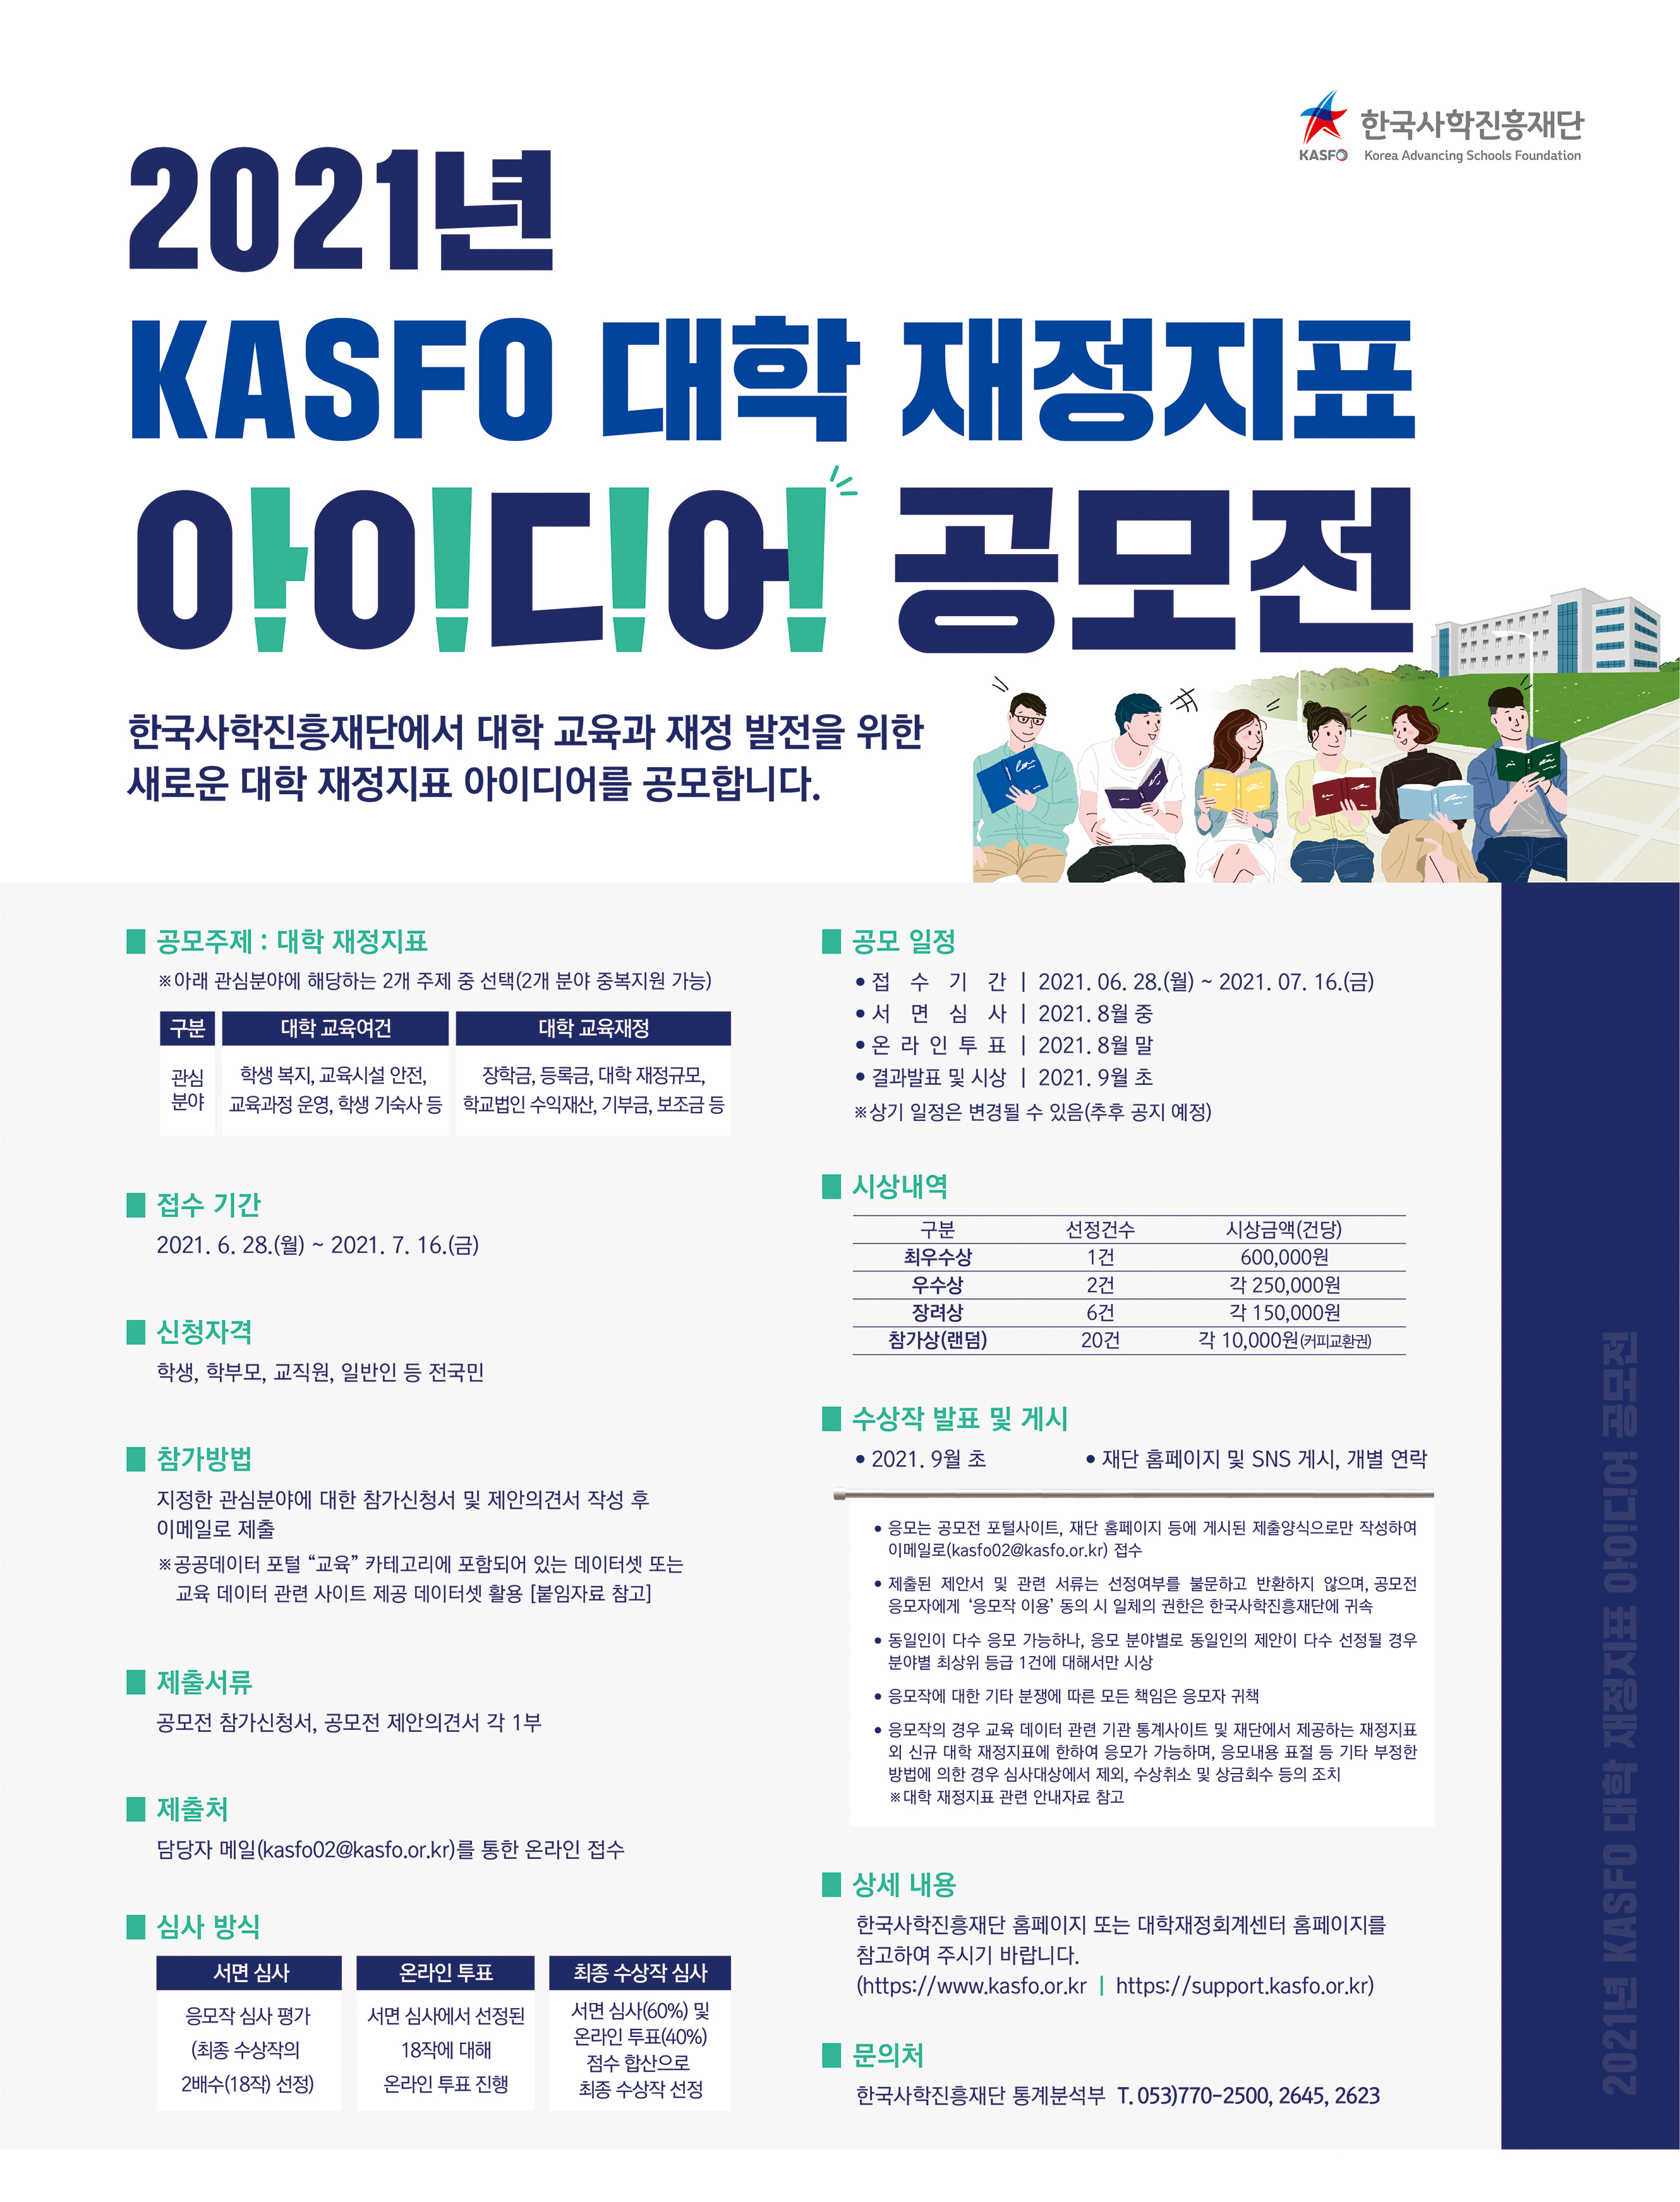 [공모전] KASFO 대학 재정지표 아이디어 공모전 개최 안내